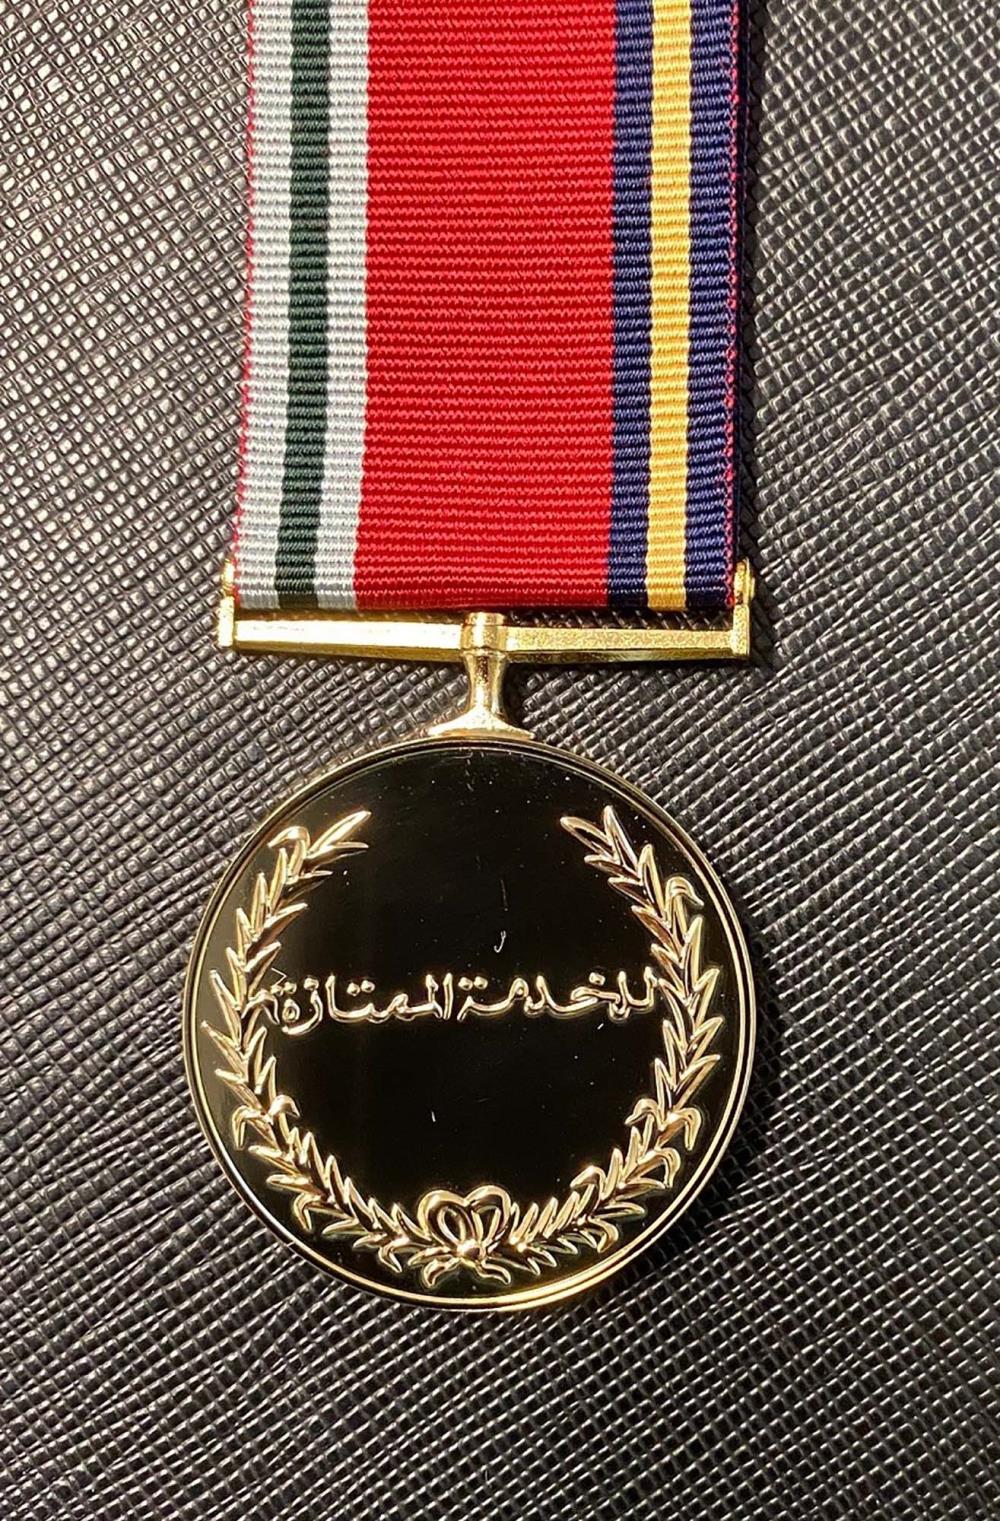 Oman - Distinguished Service Medal